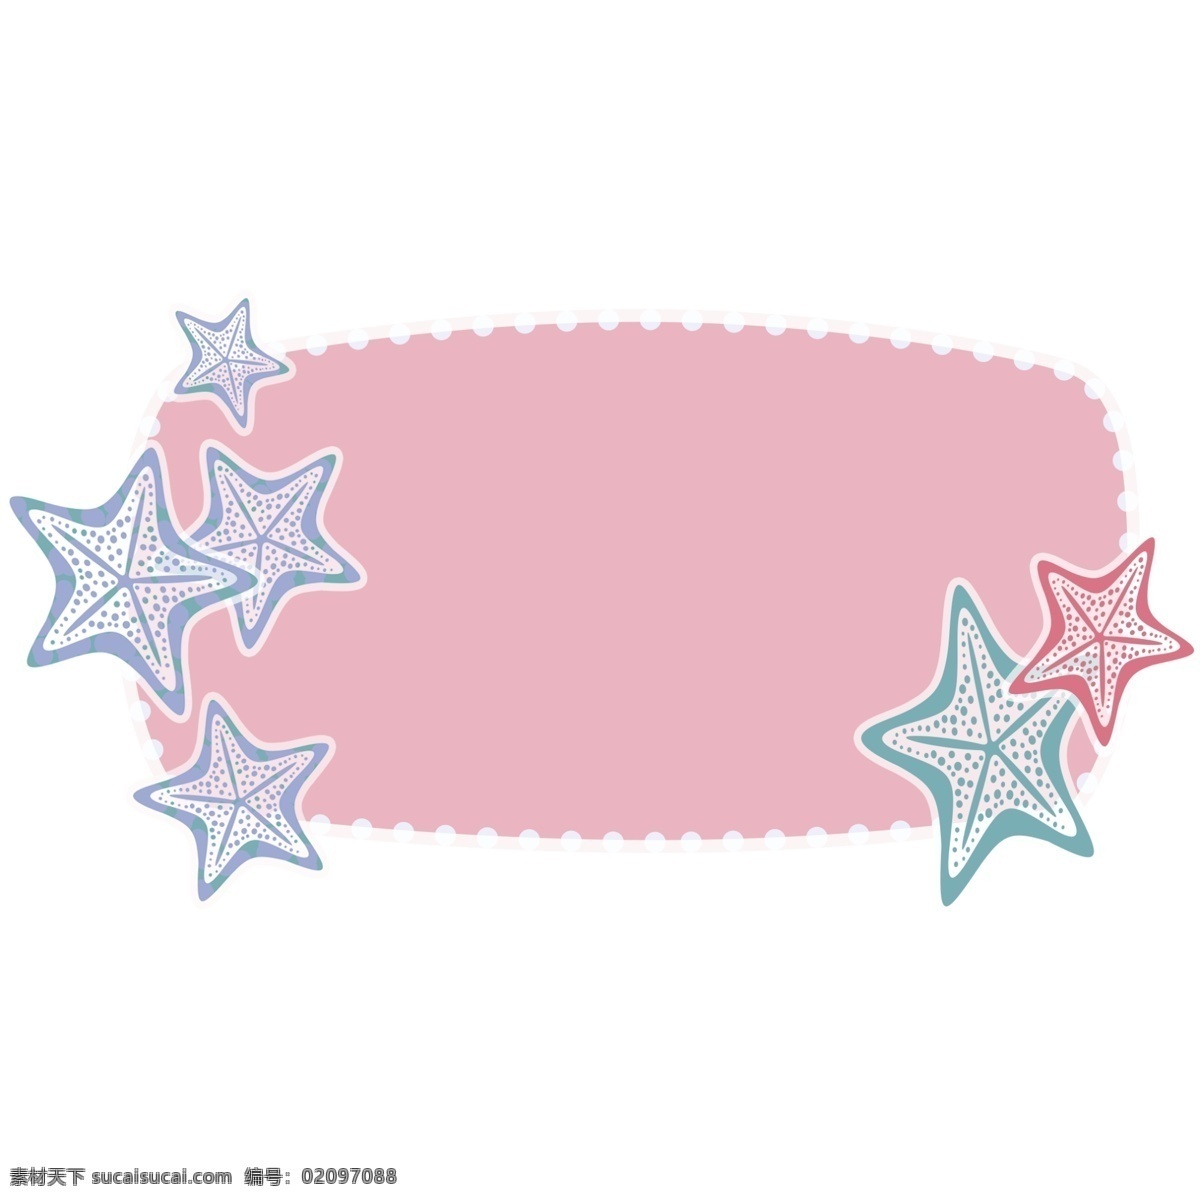 粉色 五角星 边框 粉色的边框 五角星边框 可爱的边框 清新边框 创意边框 立体边框 精美边框